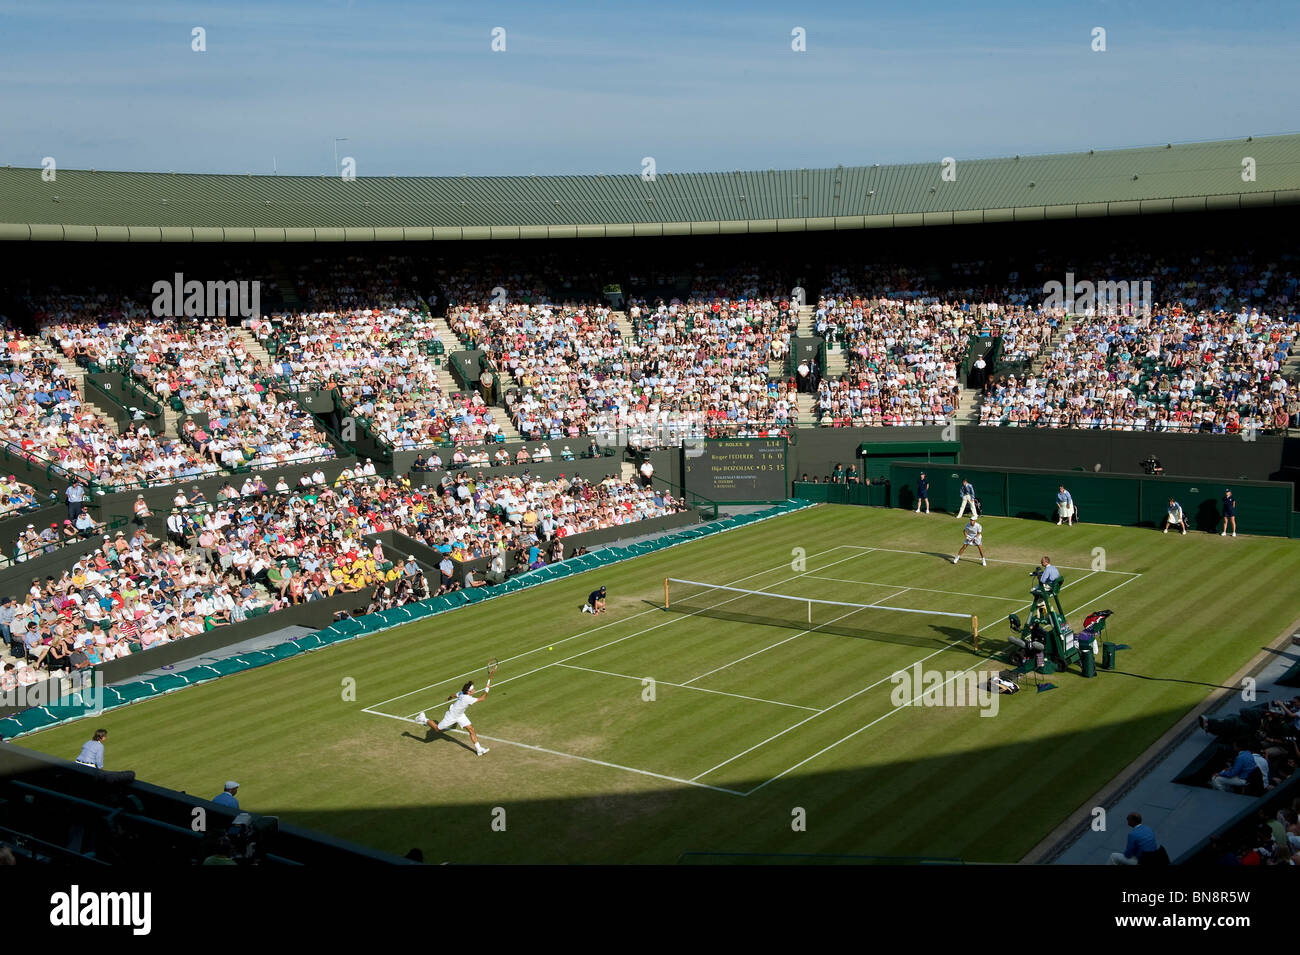 Vue générale de jouer sur 1 au cours de la cour tennis de Wimbledon 2010 Banque D'Images